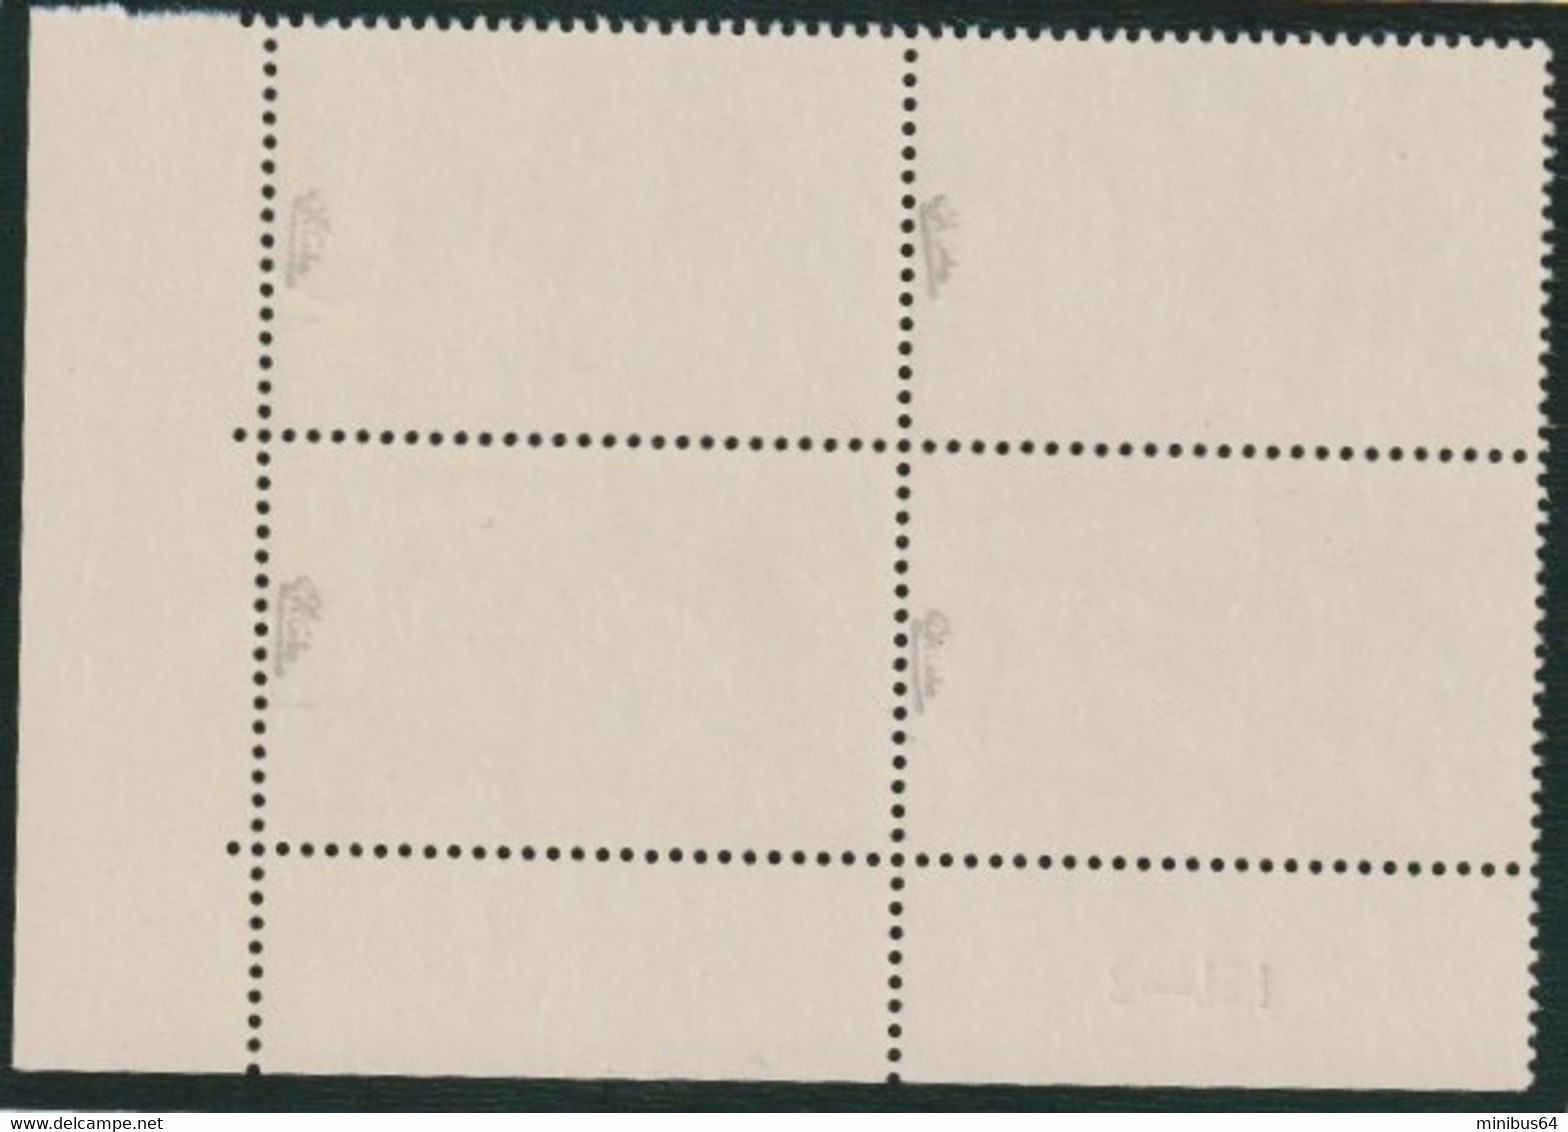 FRANCE - 1977 - La Cigale Rouge - N°YT 1946b (inscriptions Omises) - Bloc De 4 Coin De Feuille - Certificat Calves - Unused Stamps